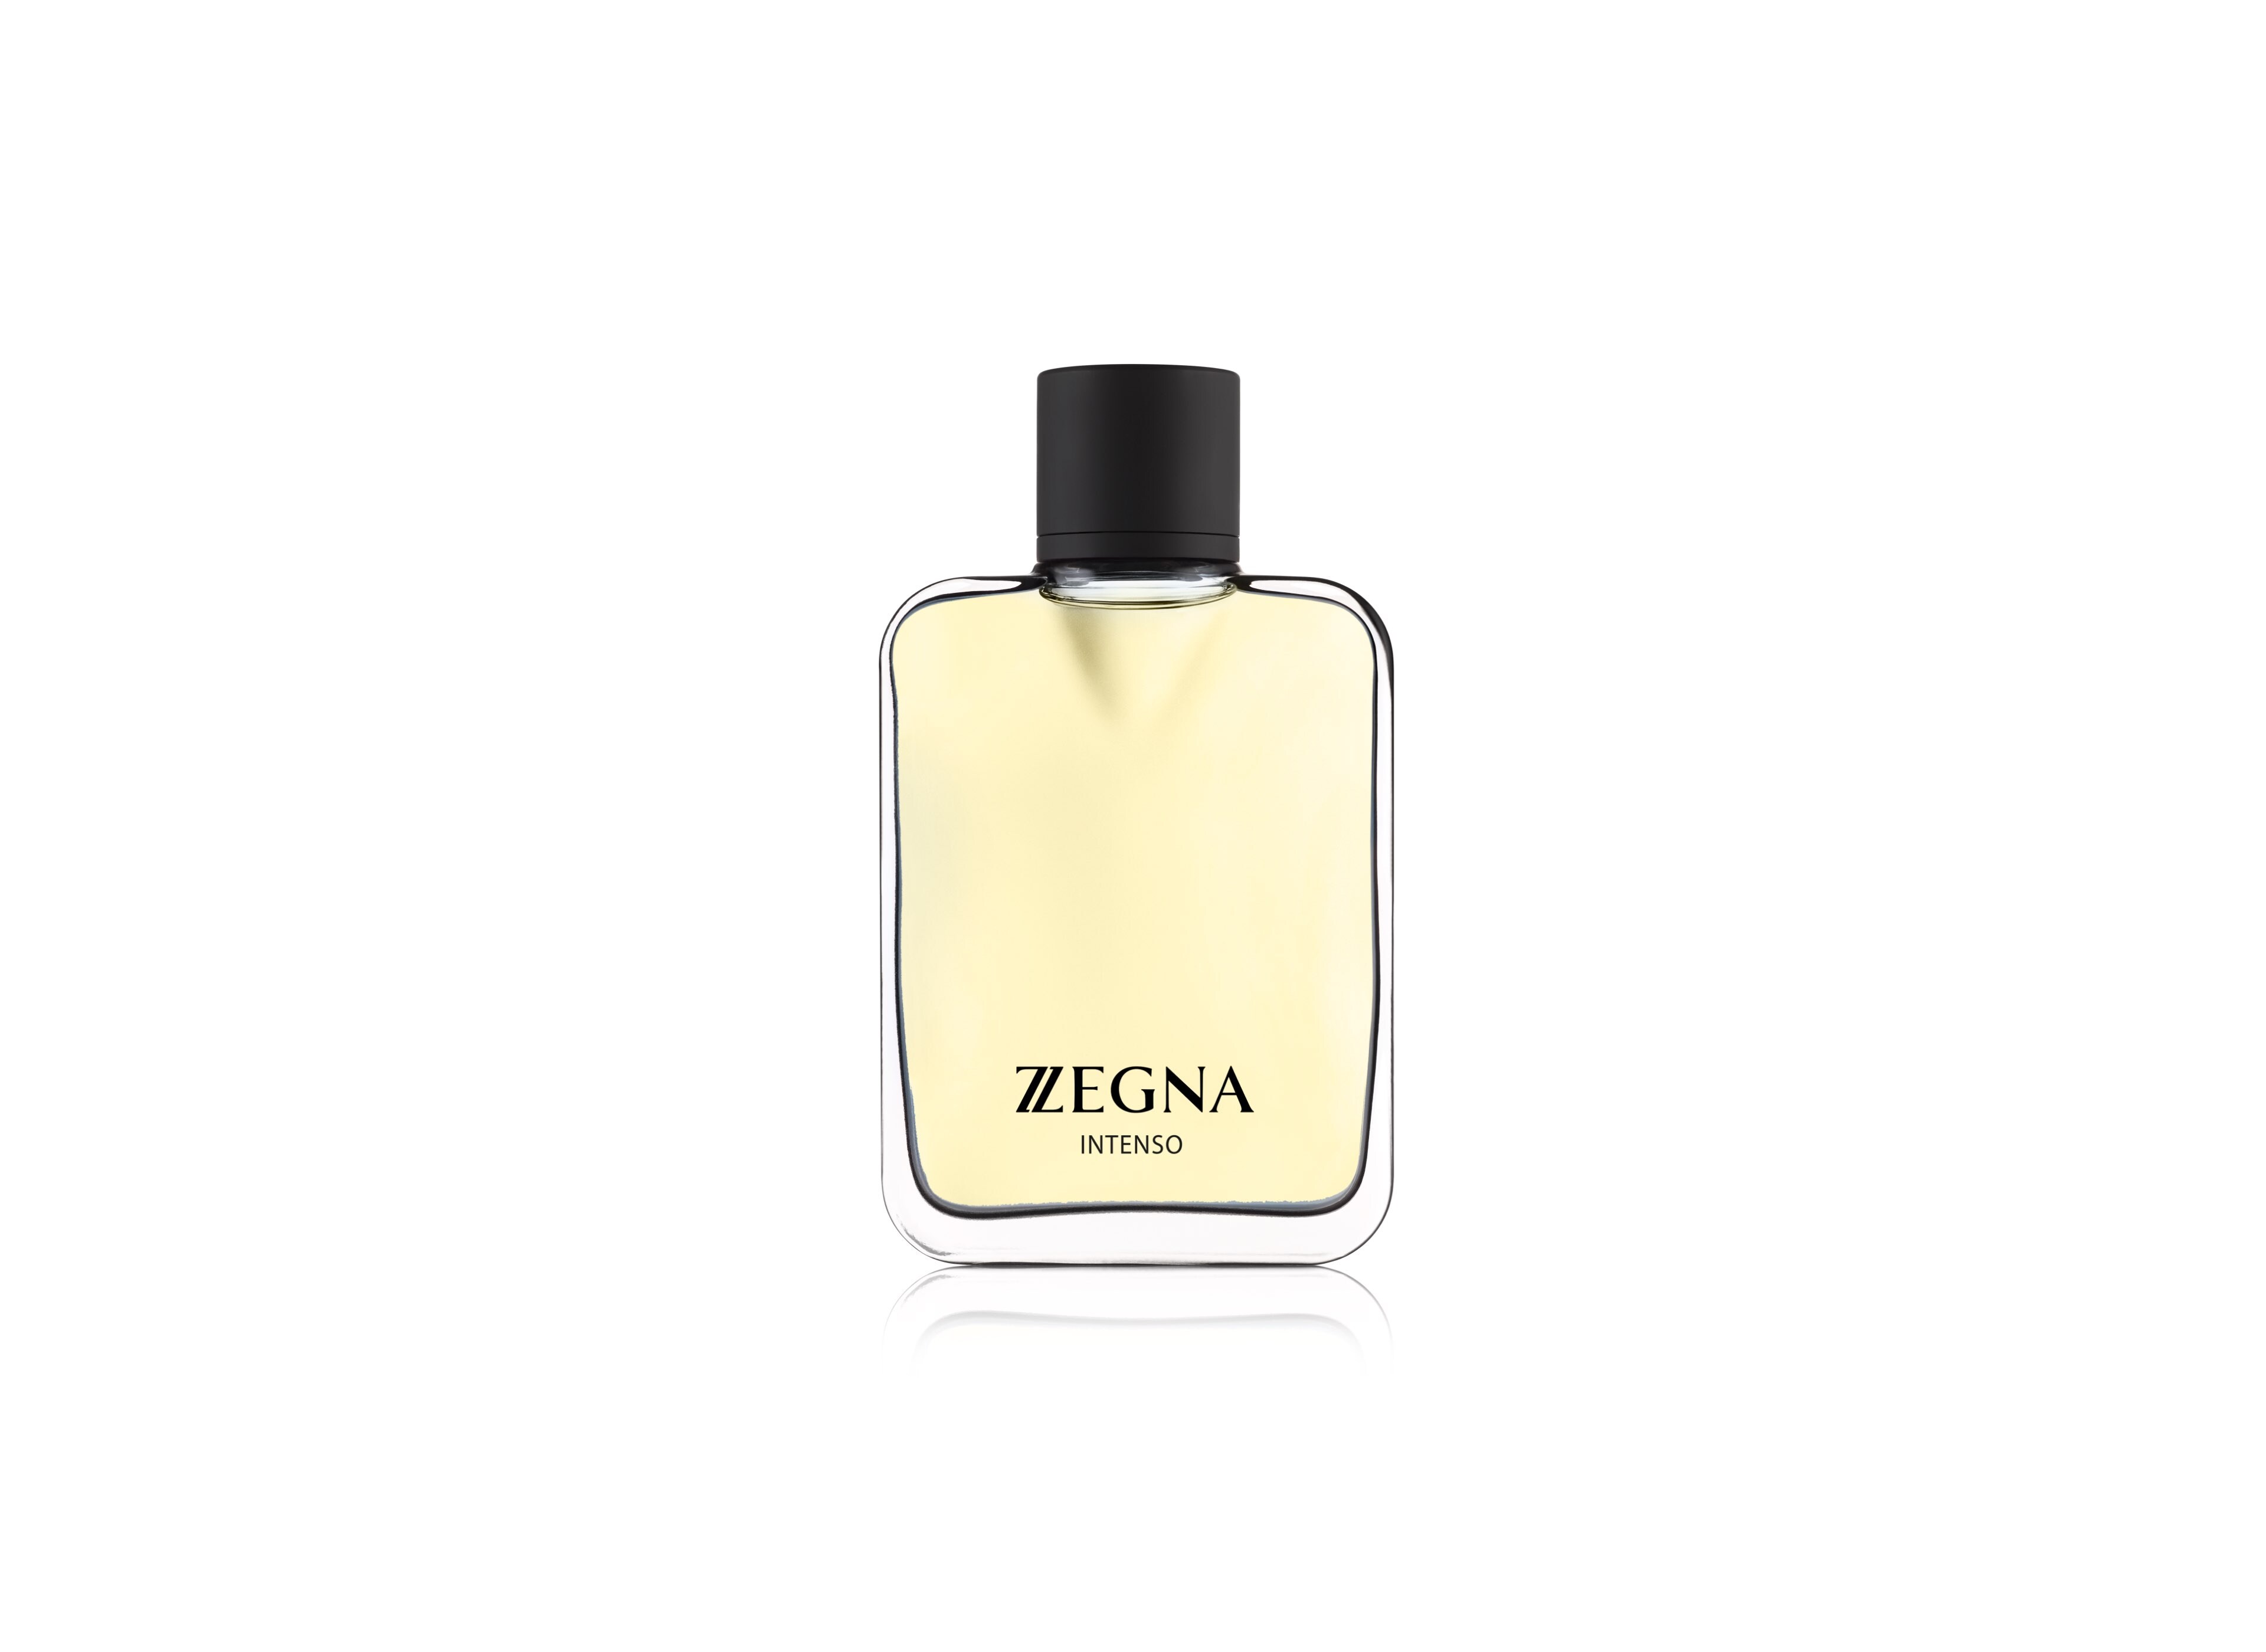 Eau de toilette collection: luxury fragrances for men | ZZegna